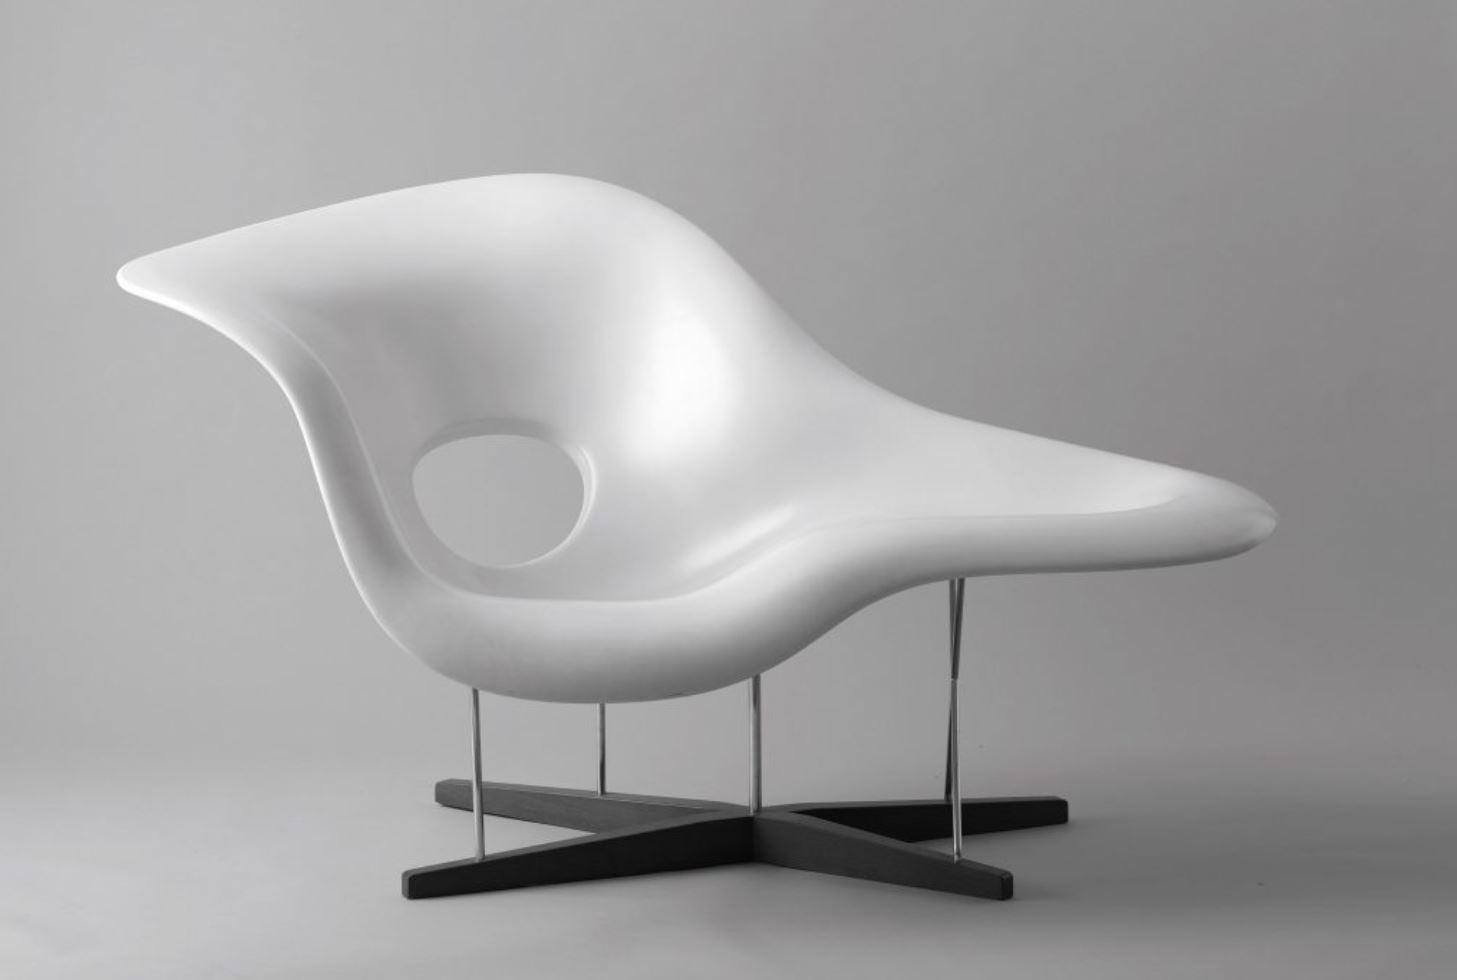 Дизайнерские стулья La Chaise Lounge: скульптура, воплощенная в мебели